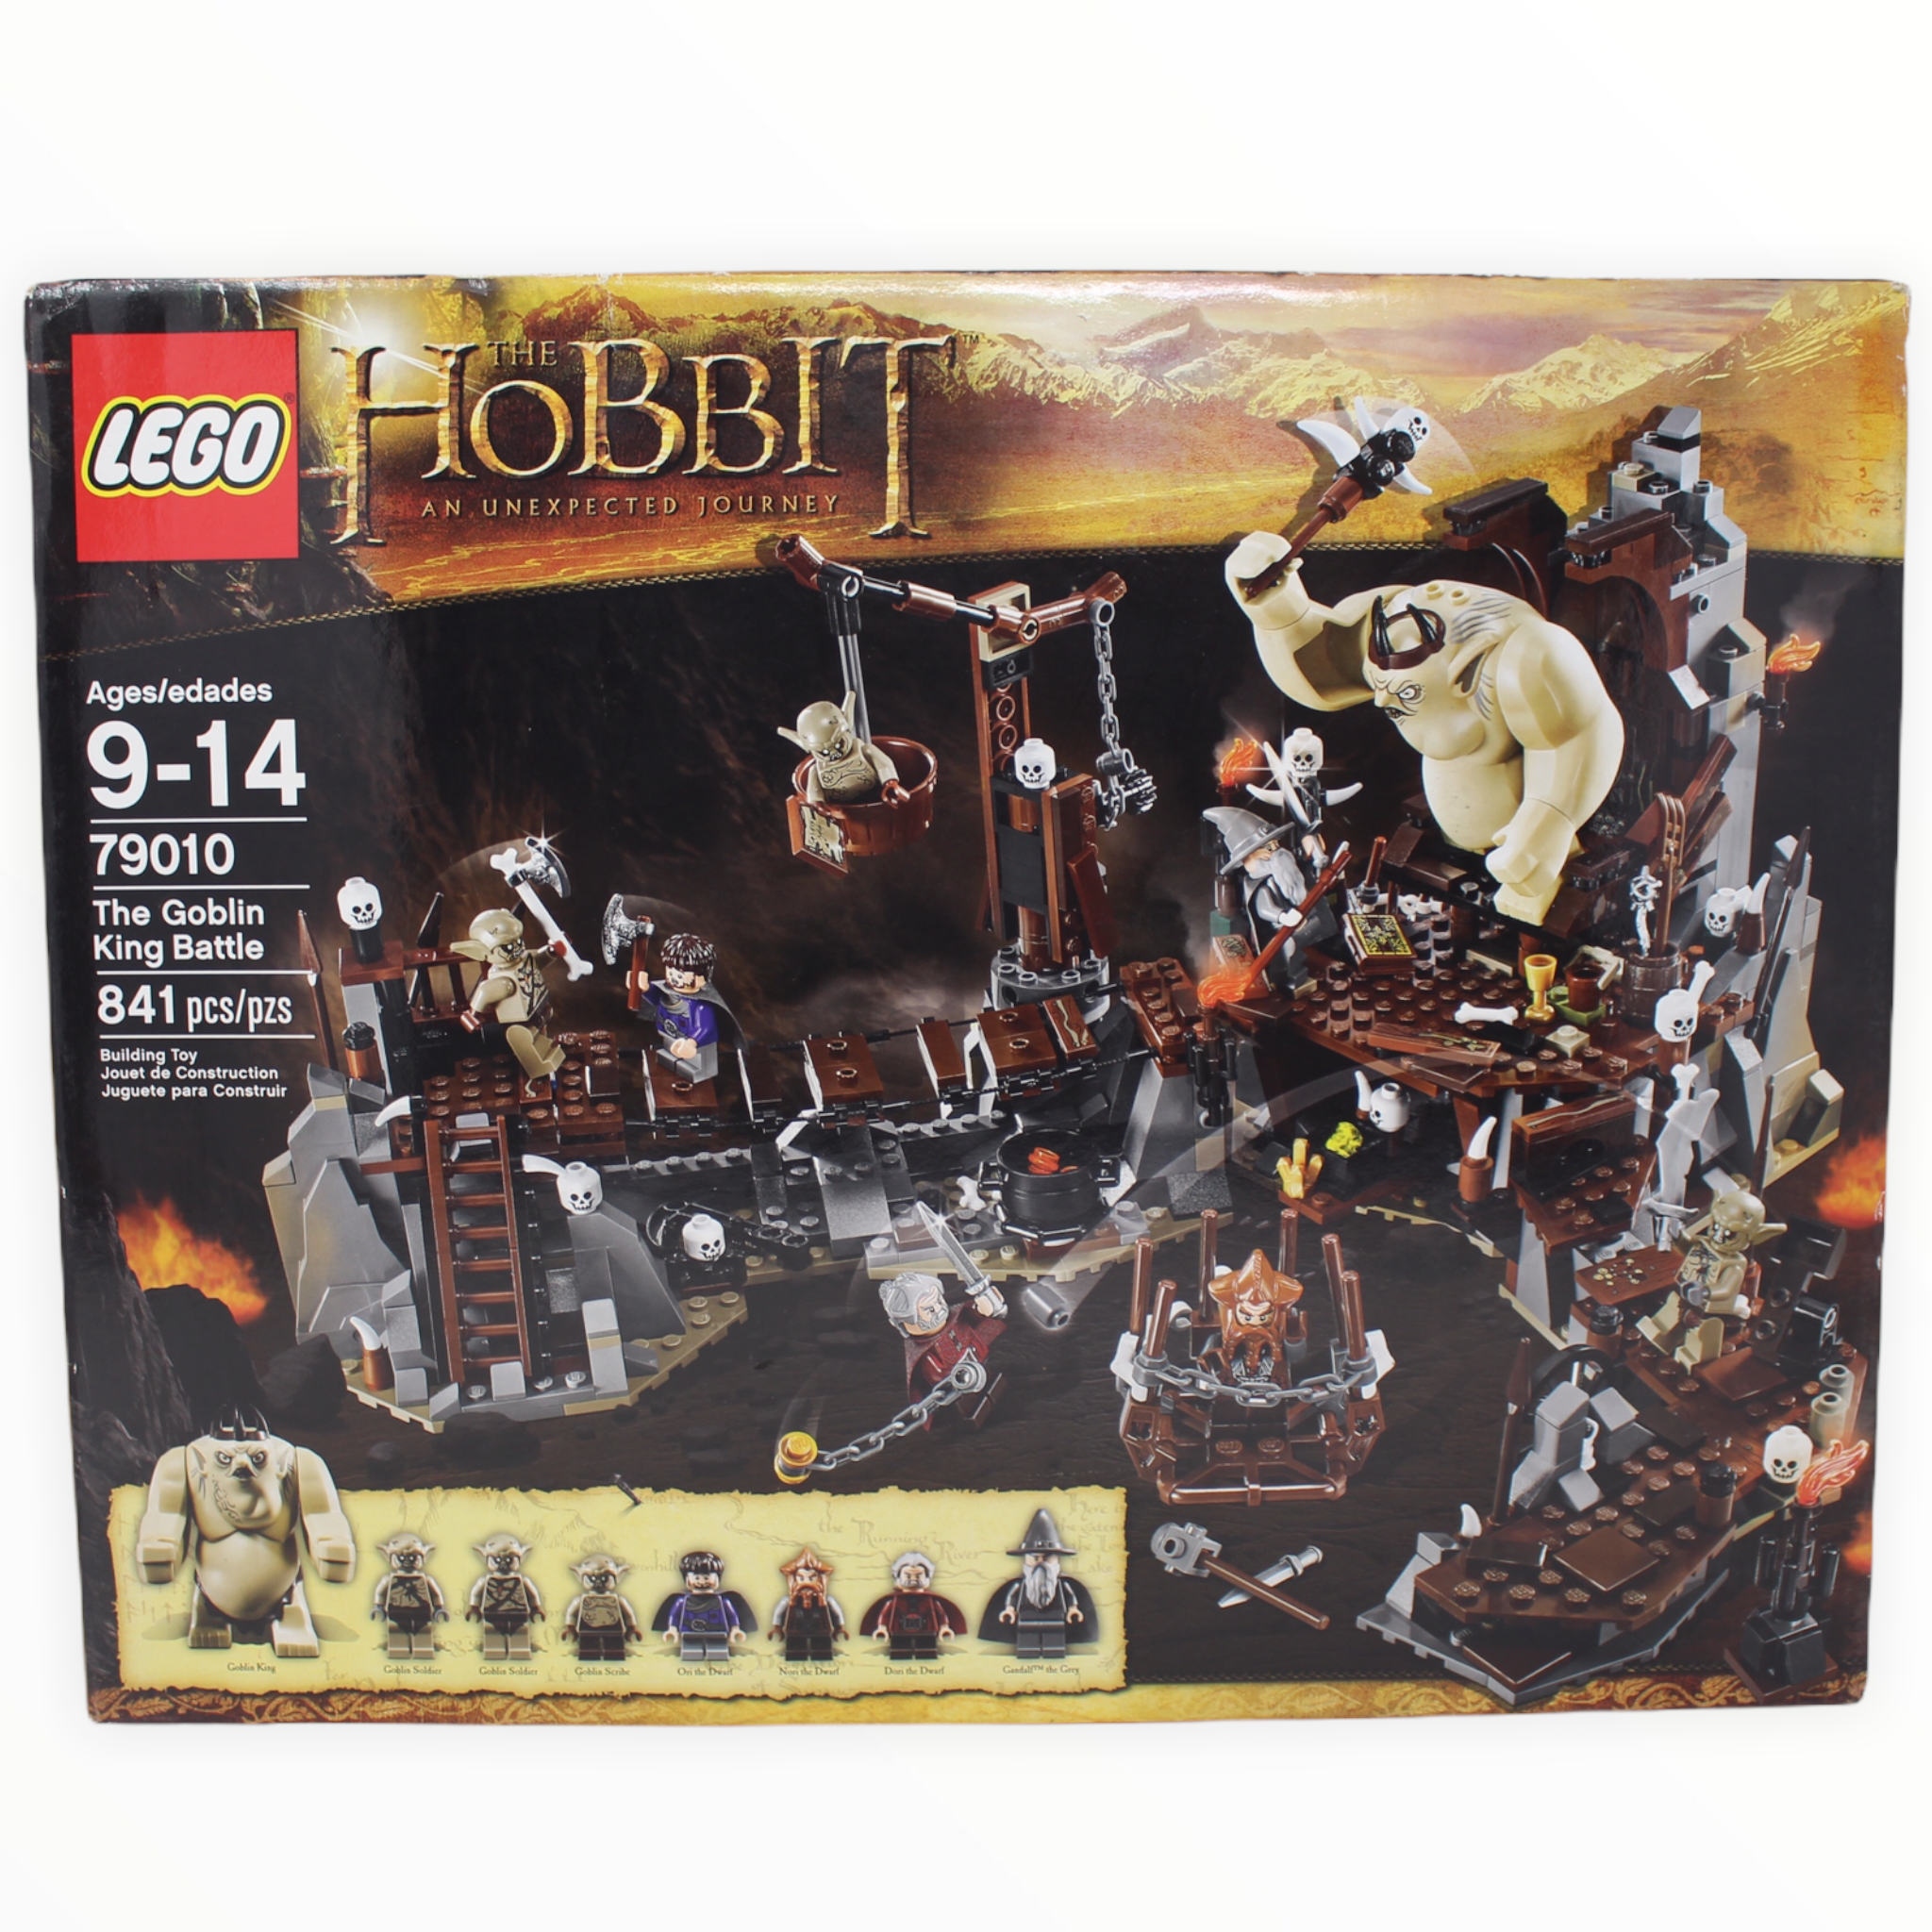 Retired Set 79010 The Hobbit The Goblin King Battle